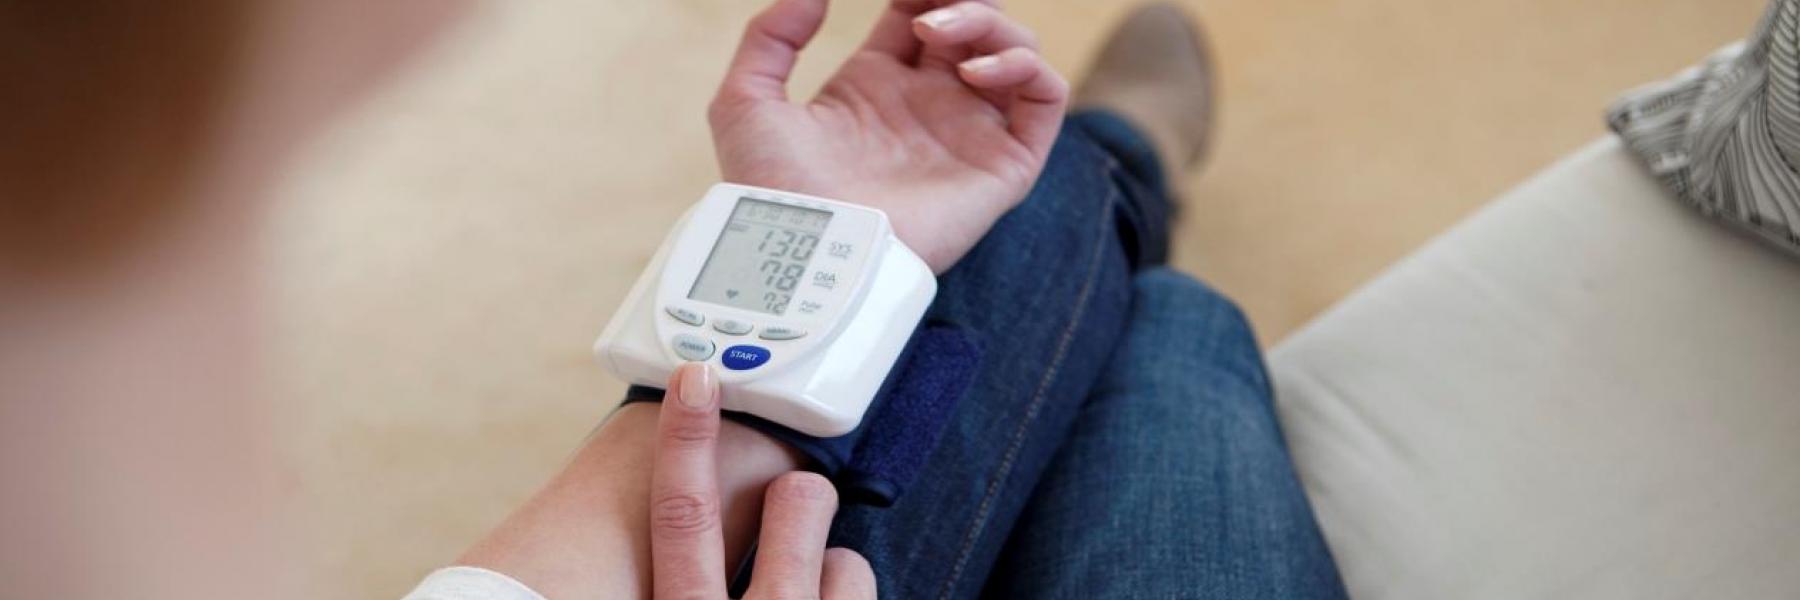 ما هو أفضل وقت خلال اليوم لقياس ضغط الدم؟